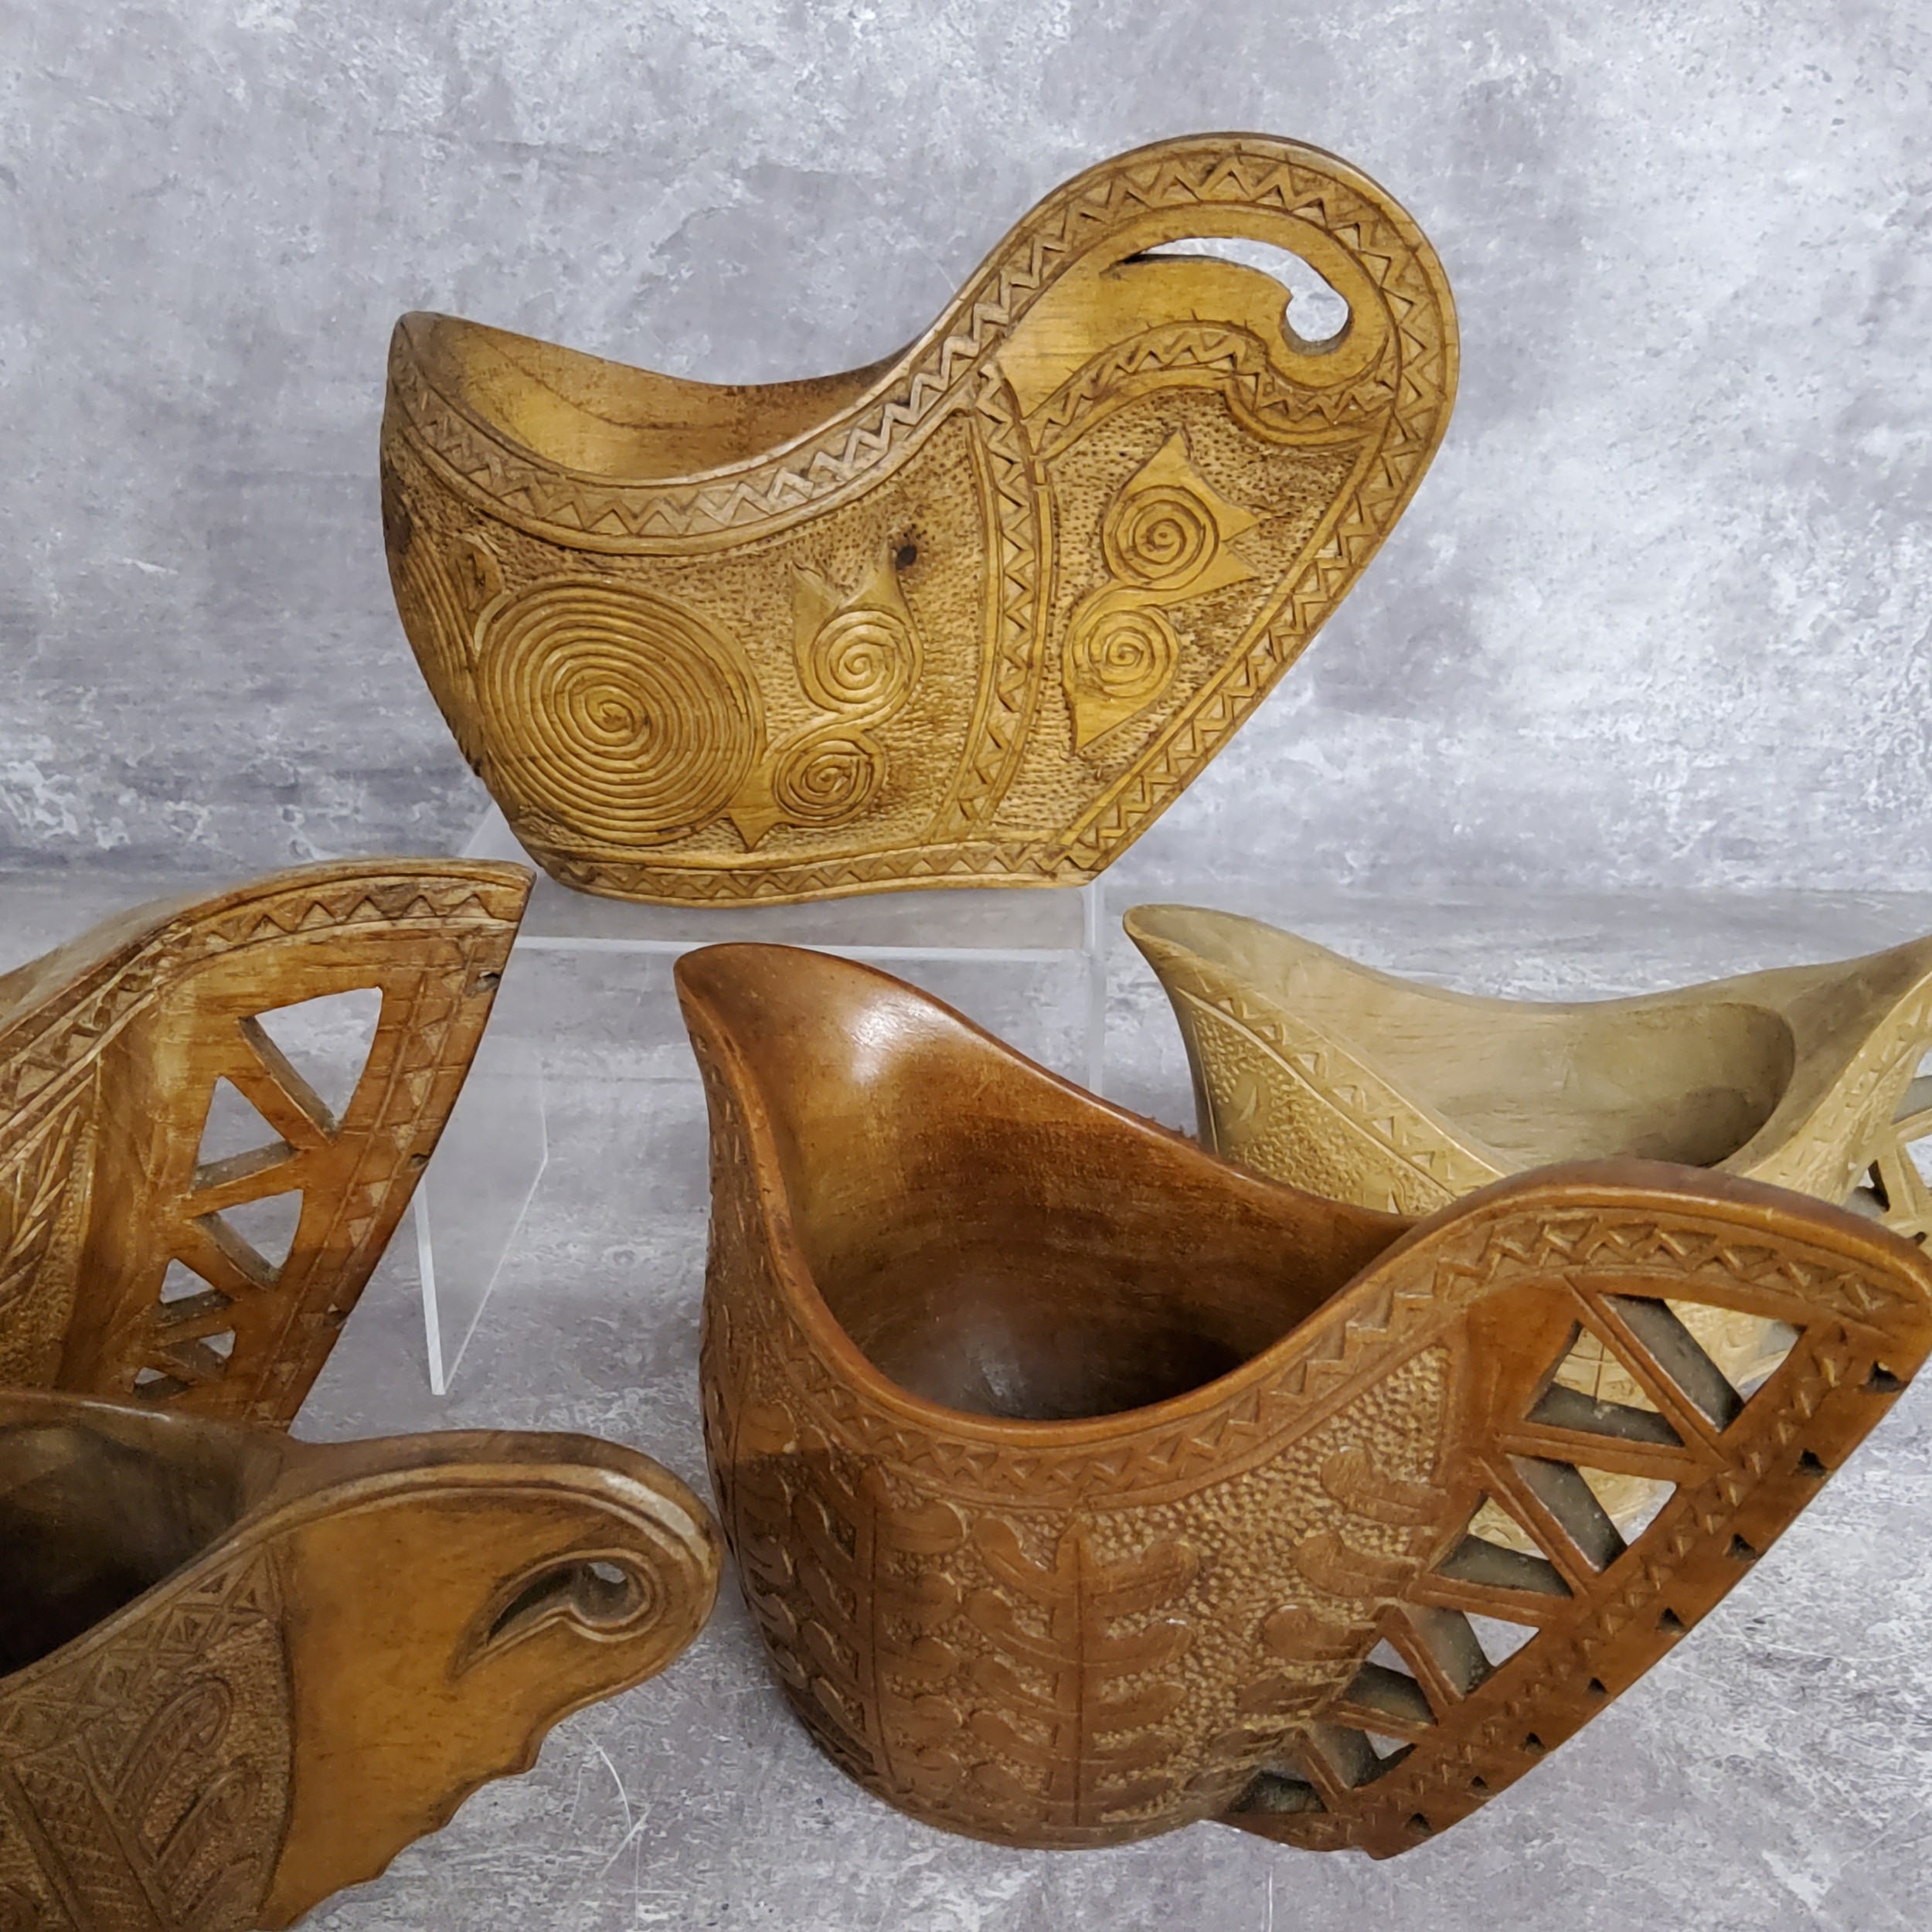 Treen - Five Yugoslavian carved ceremonial 'shepherd wedding' cups - Image 2 of 2